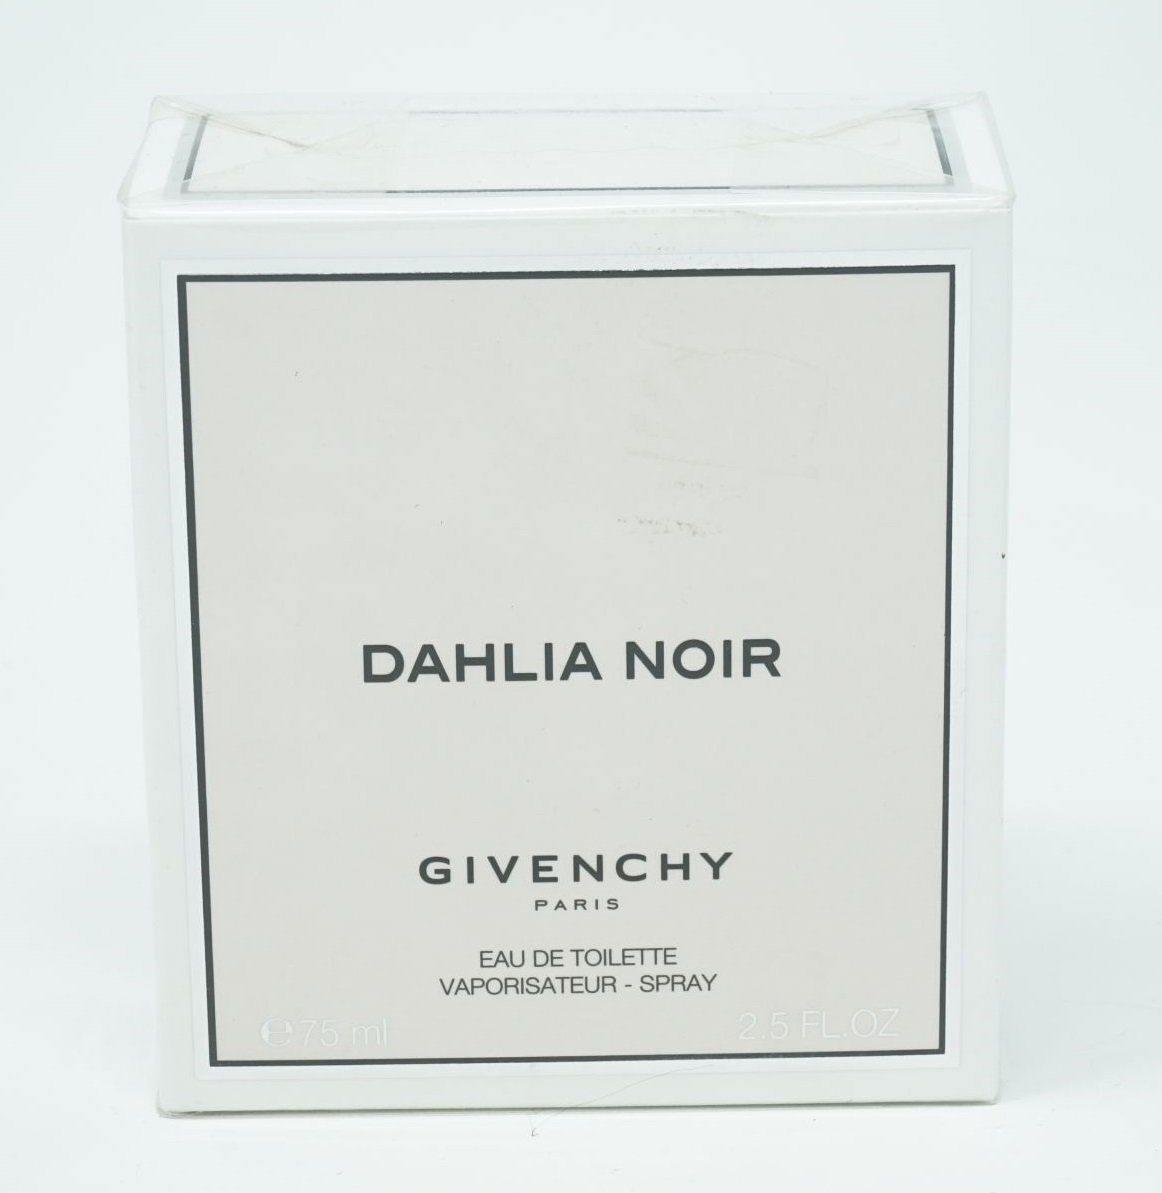 GIVENCHY Eau de Toilette Givenchy Noir Dahlia 75ml Spray Toilette de Eau